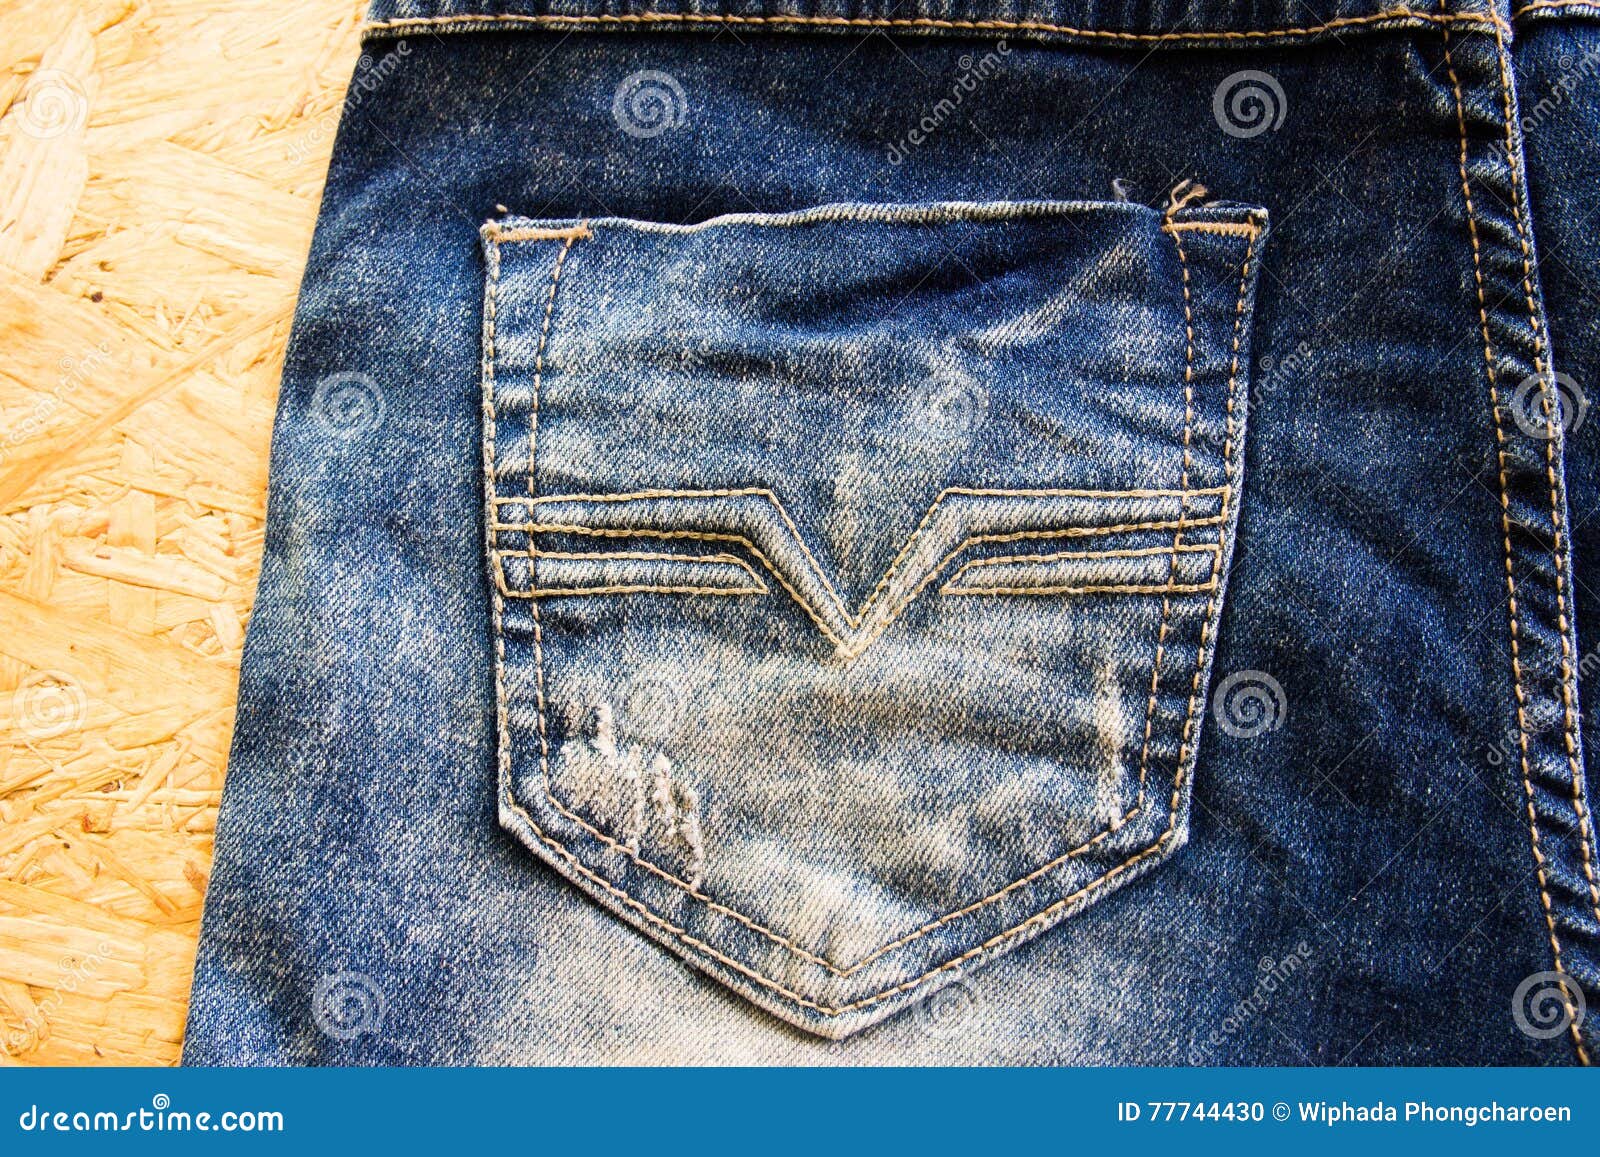 jean back pocket designs